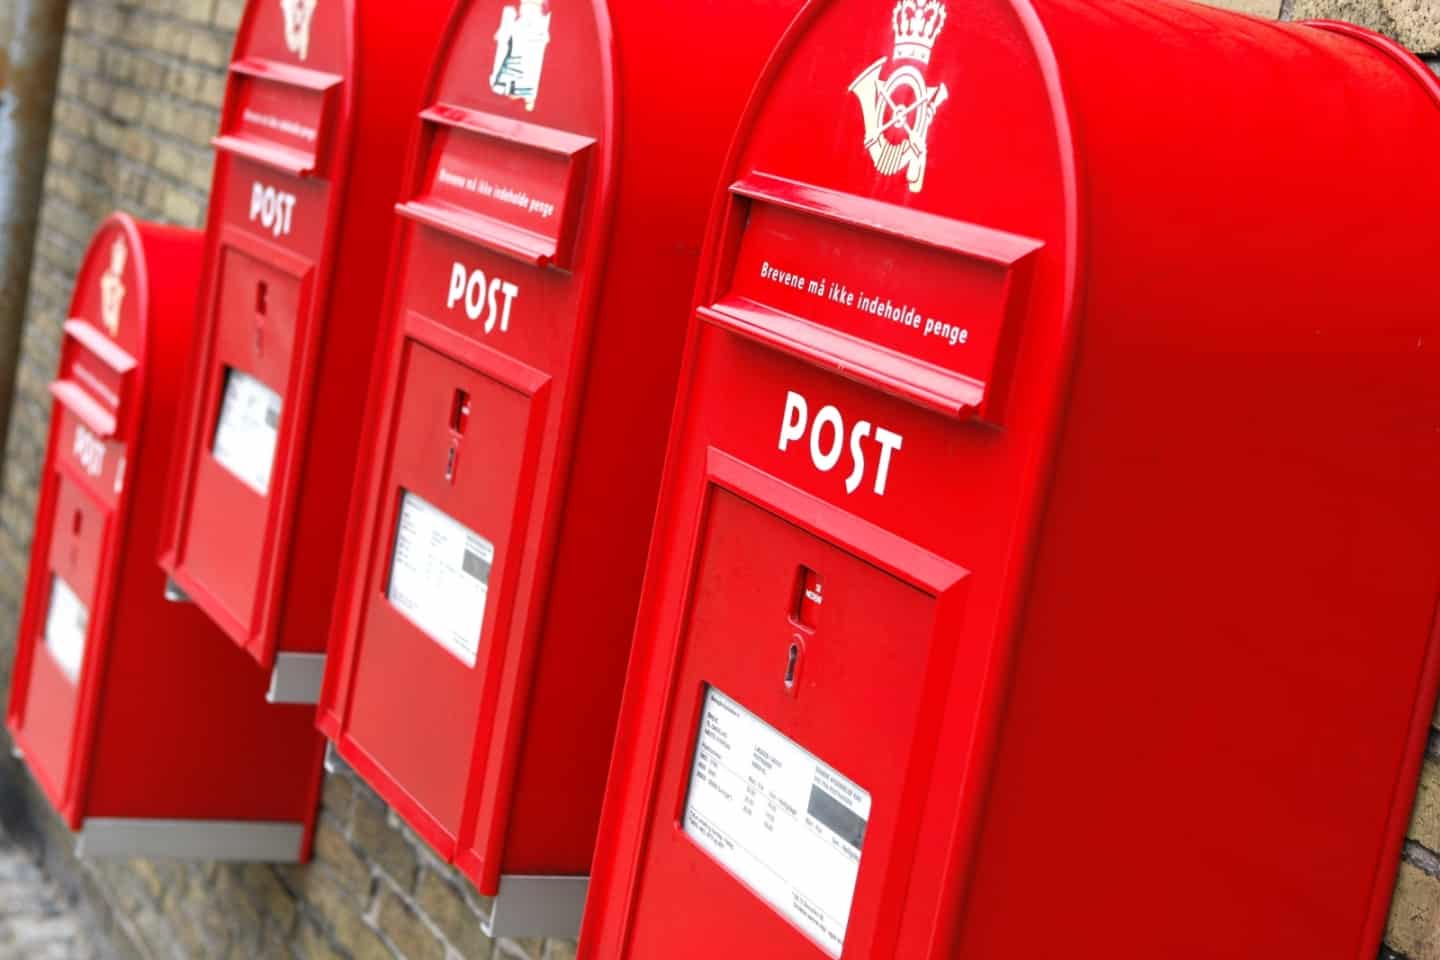 Lukning postcenter rammer ikke L-F | folketidende.dk